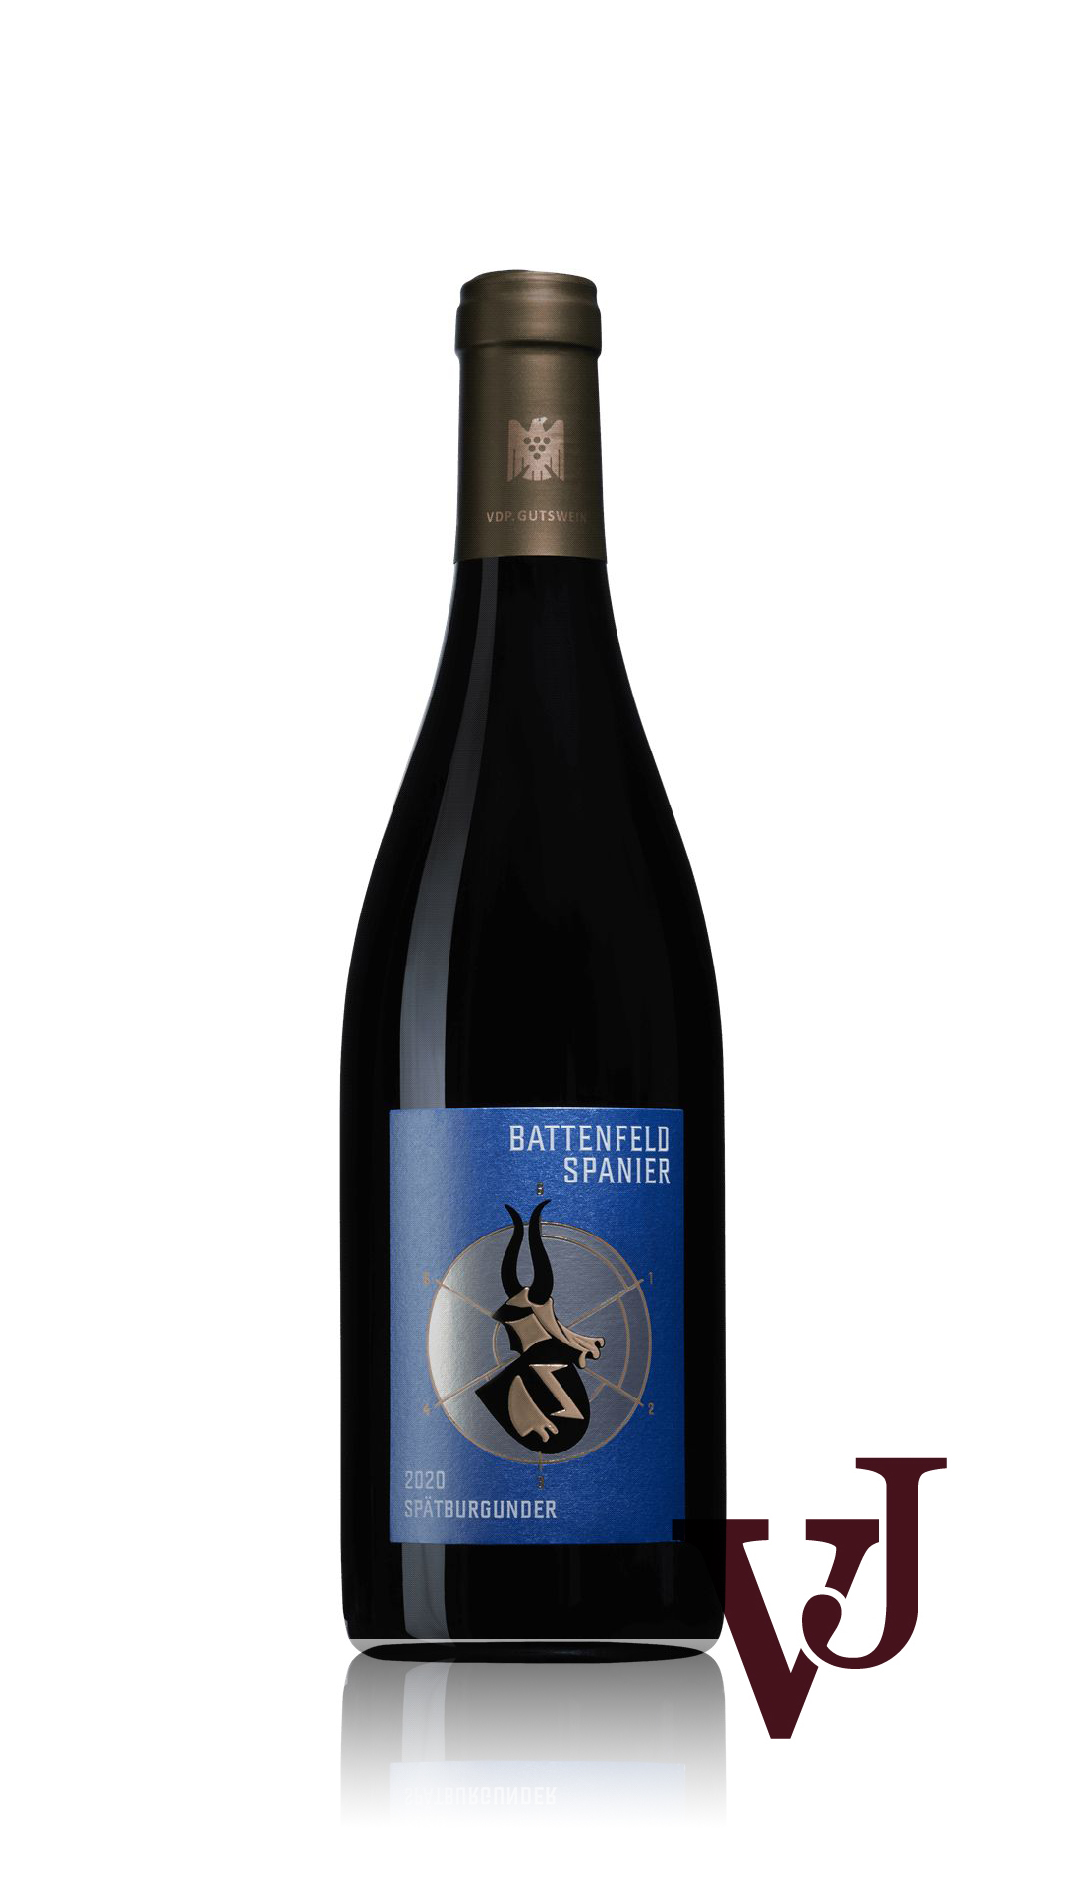 Rött Vin - Battenfeld Spanier Spätburgunder 2020 artikel nummer 9274801 från producenten Battenfeld Spanier från Tyskland